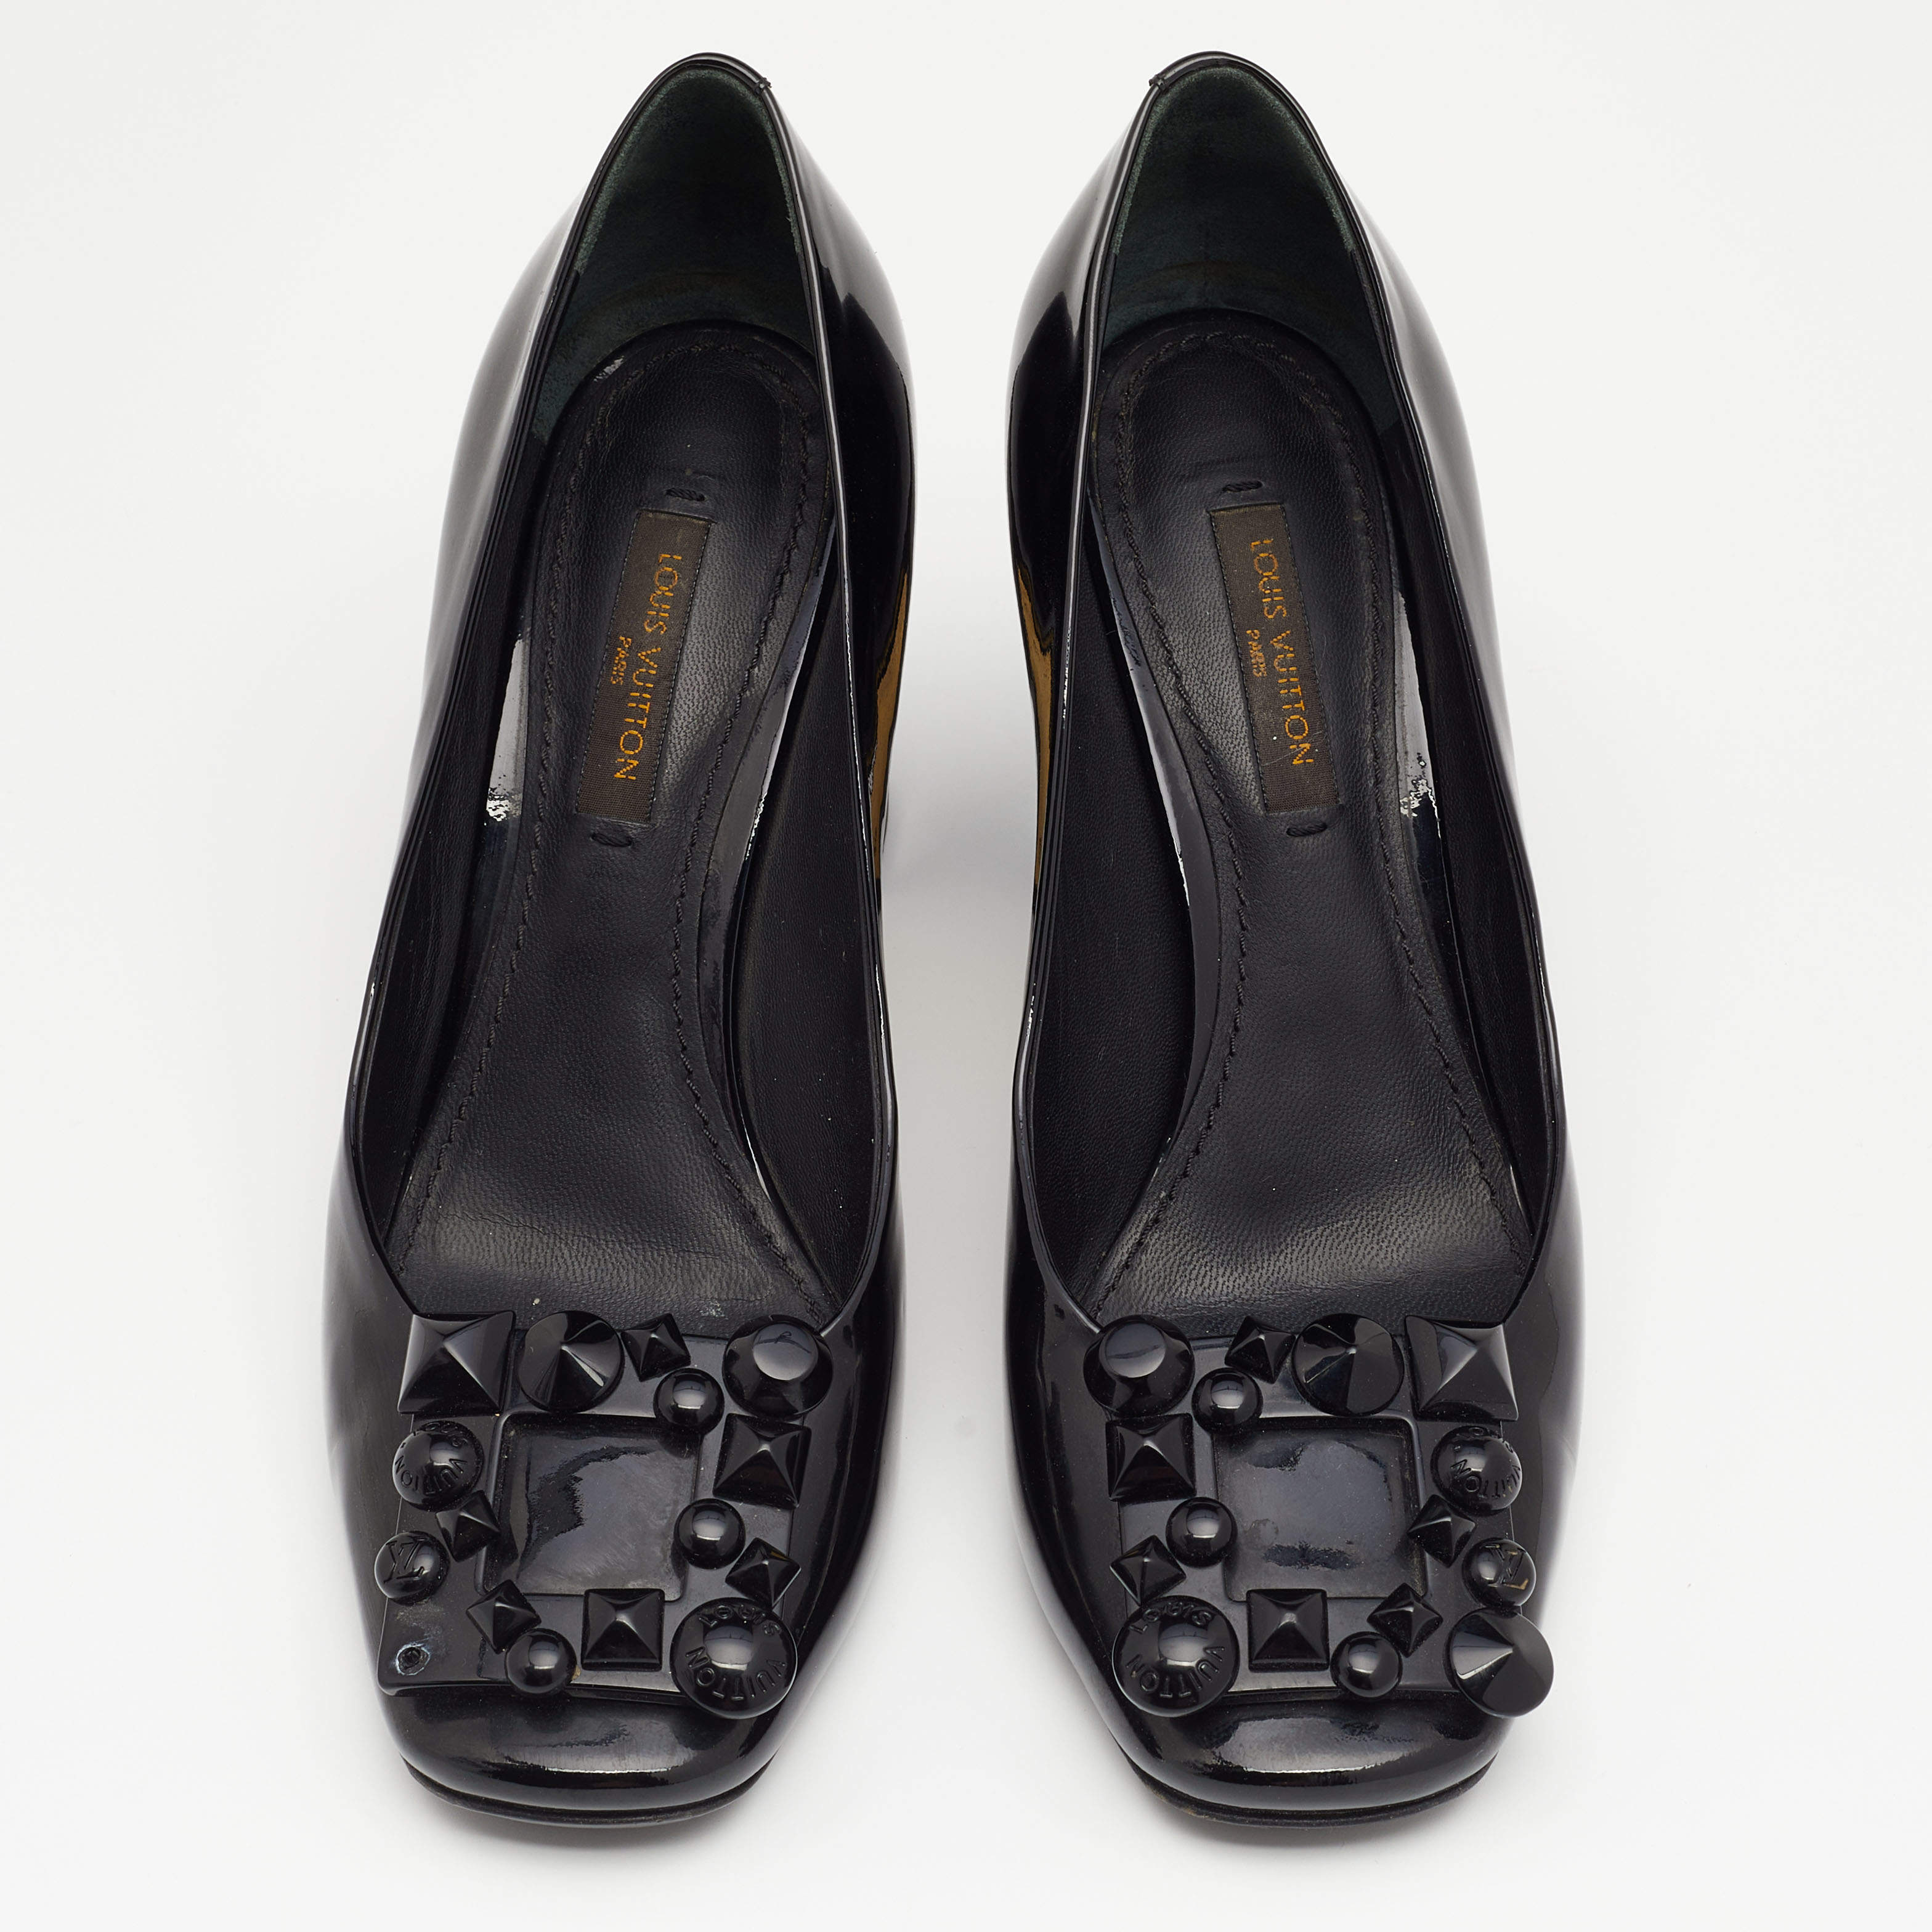 Louis Vuitton Pumps - Authentic Womens Black Patent Leather/Classy-Size  36EU/6US